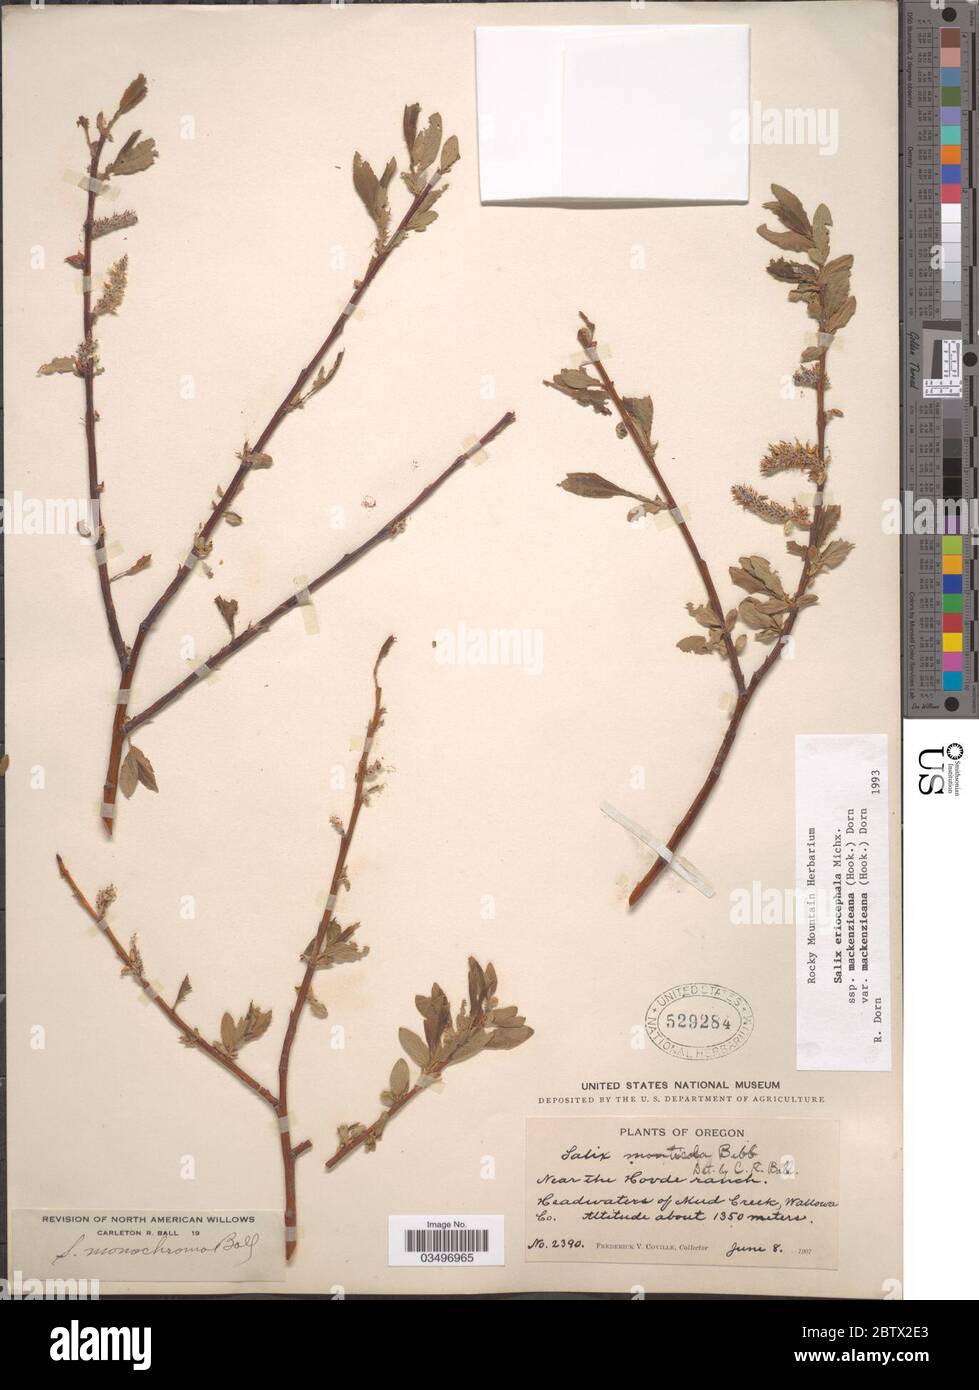 Salix eriocephala subsp mackenziena var mackenzieana. Stock Photo